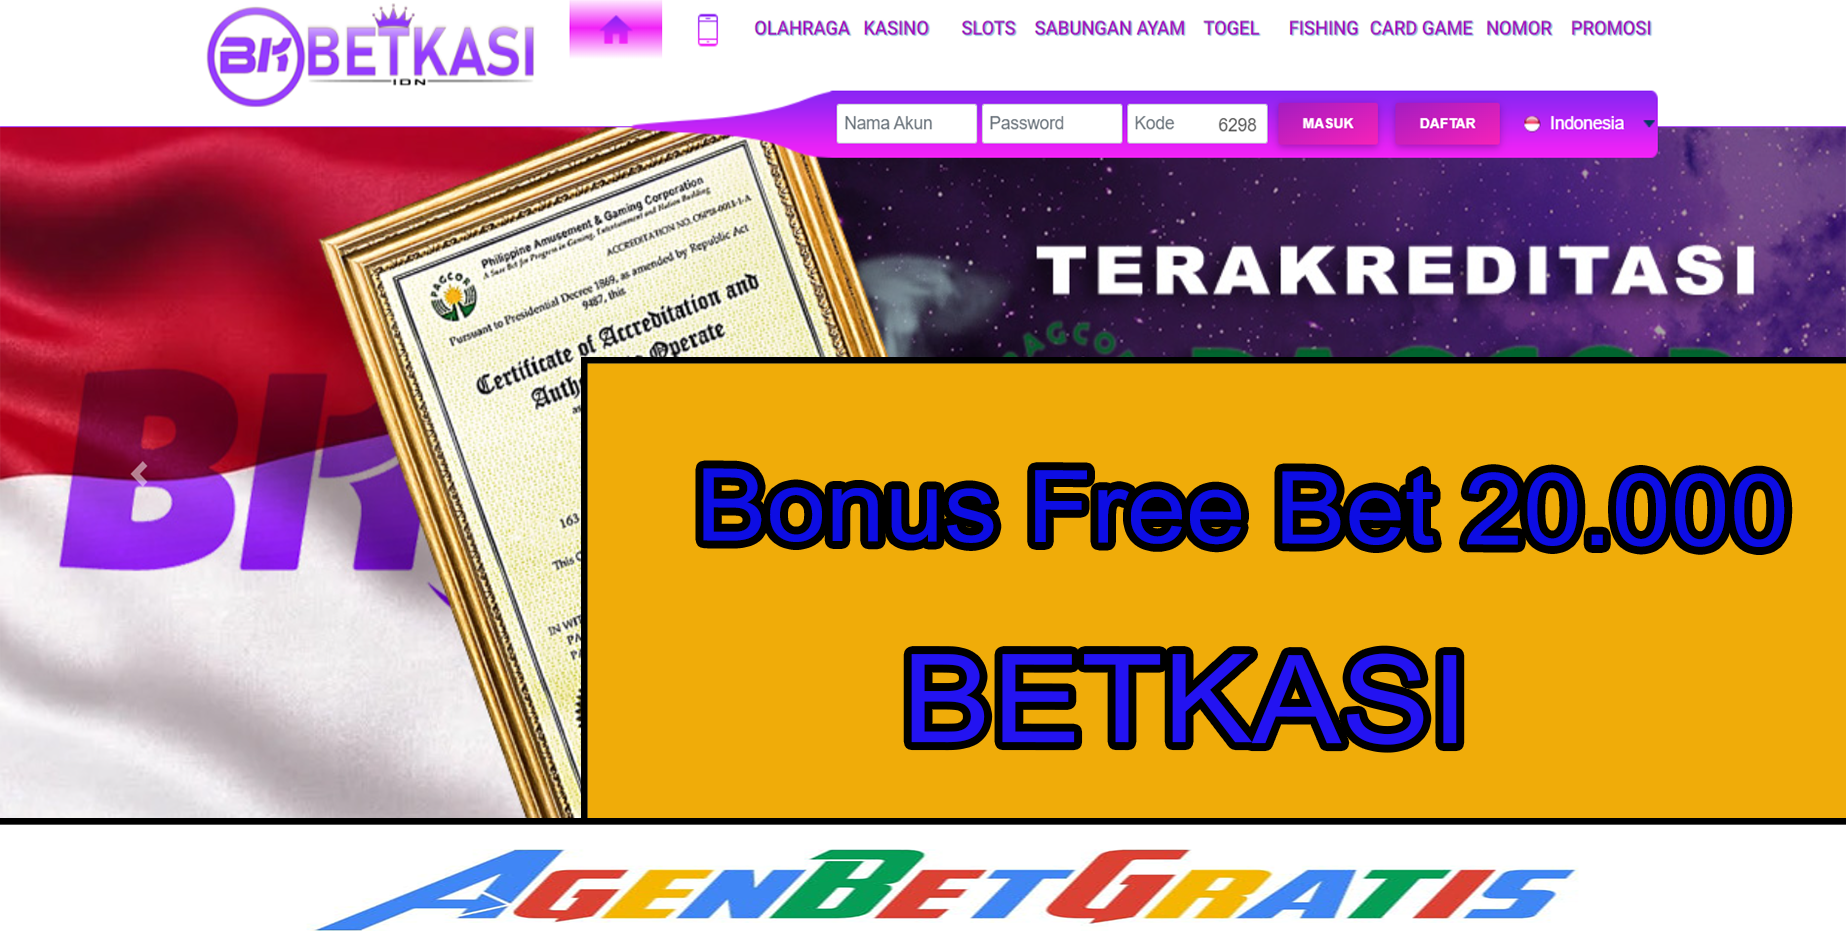 BETKASI - Bonus FreeBet 20.000